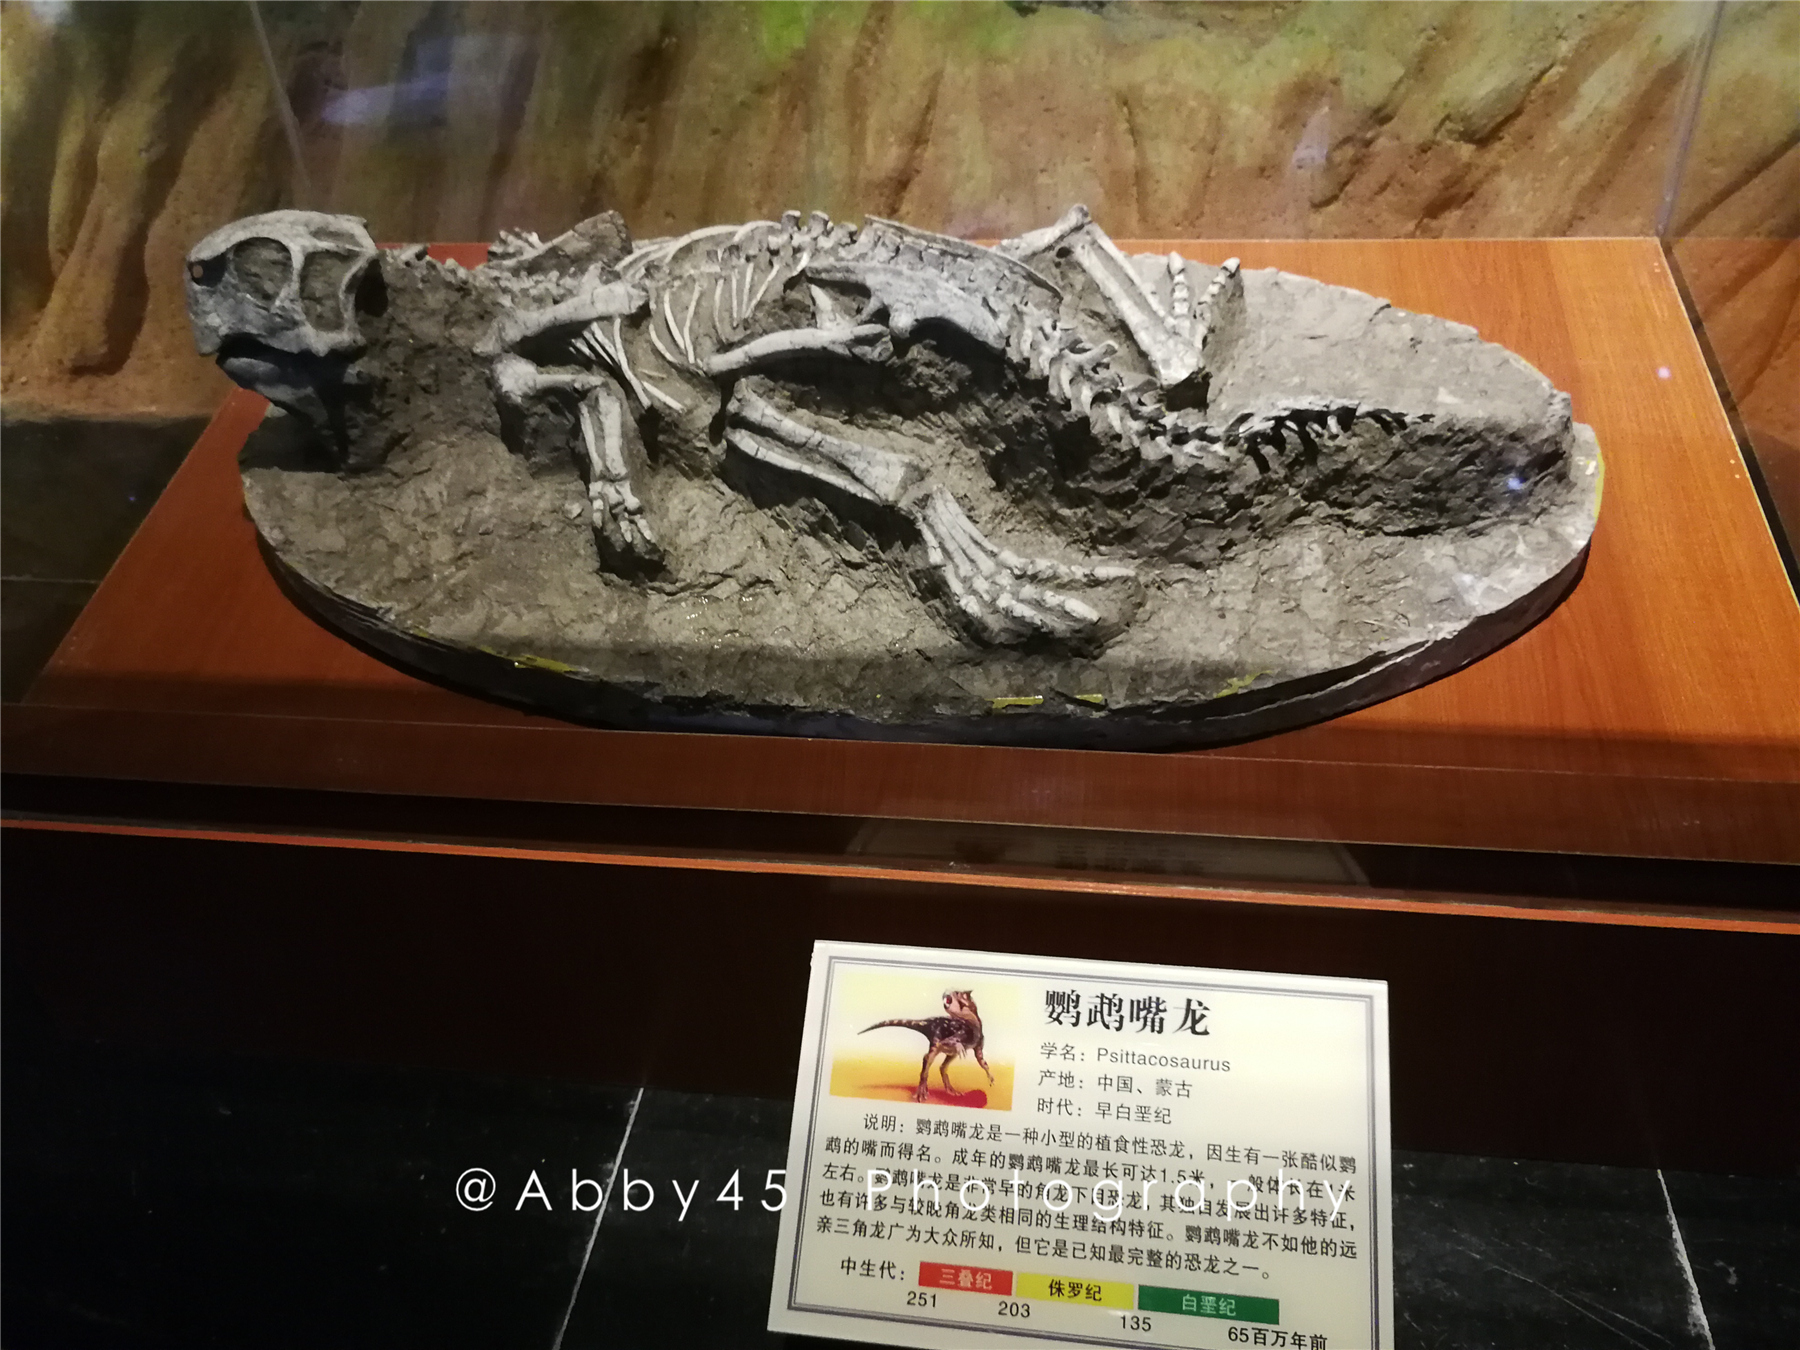 感受地球霸主卷土重来！国内超稀有恐龙化石在青岛首展